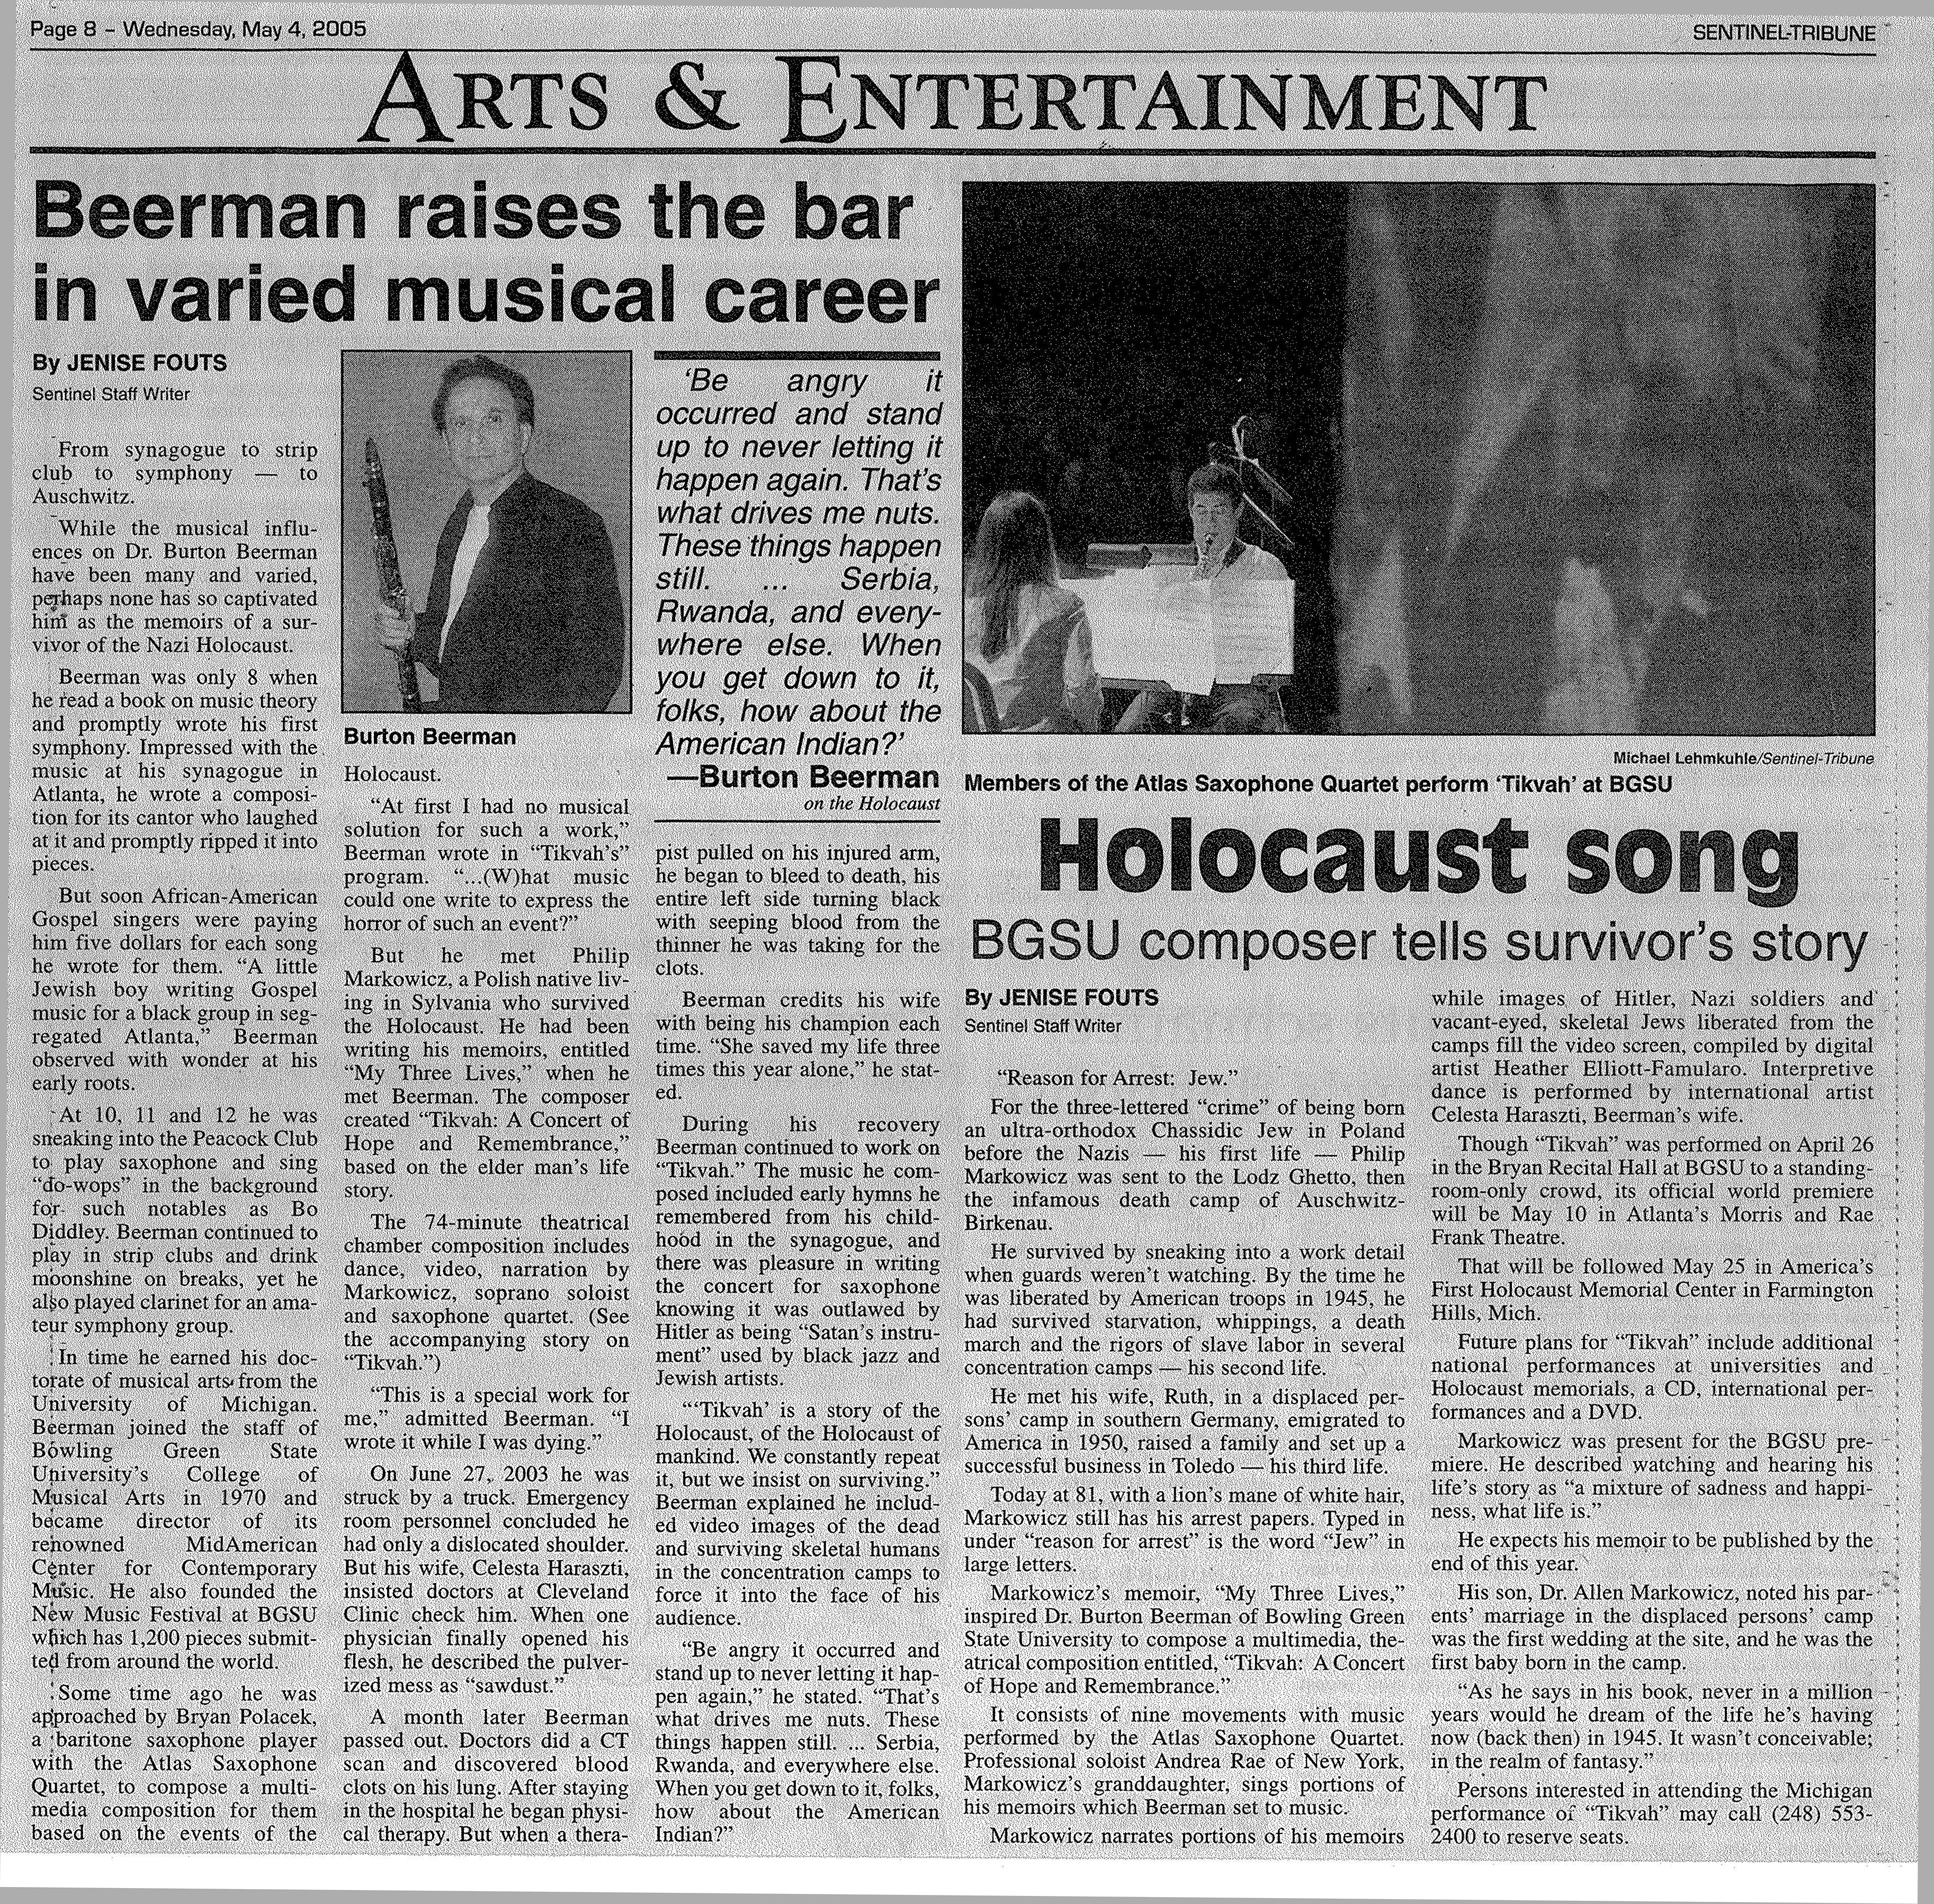 newspaper article on tikvah